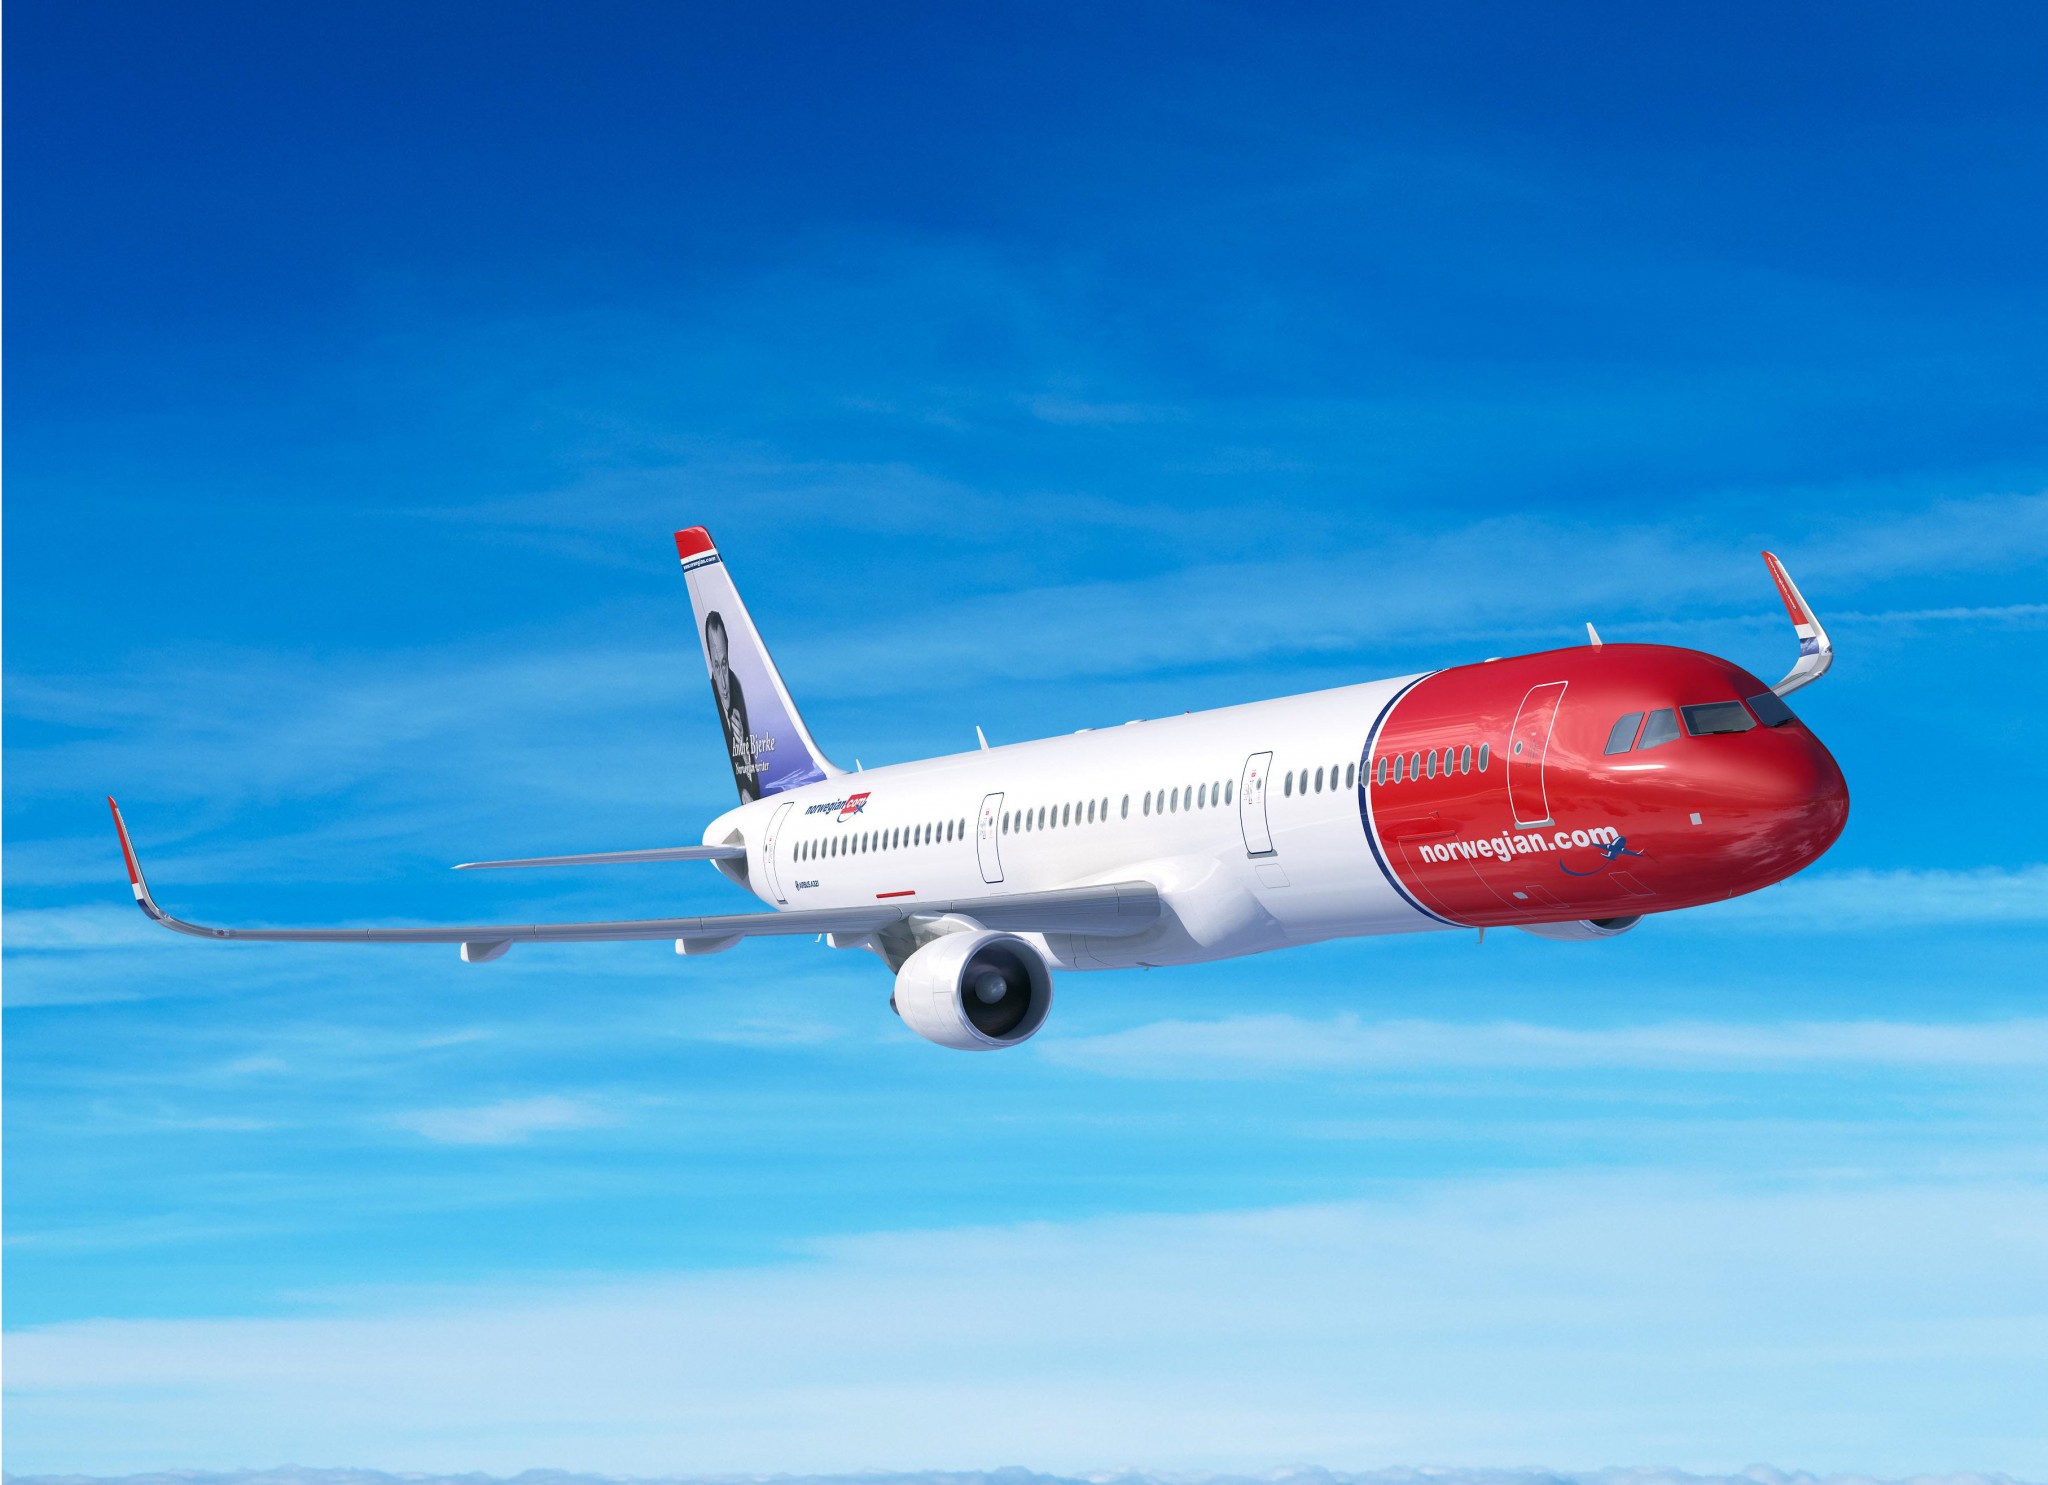 Norwegian serves three millionth long-haul passenger